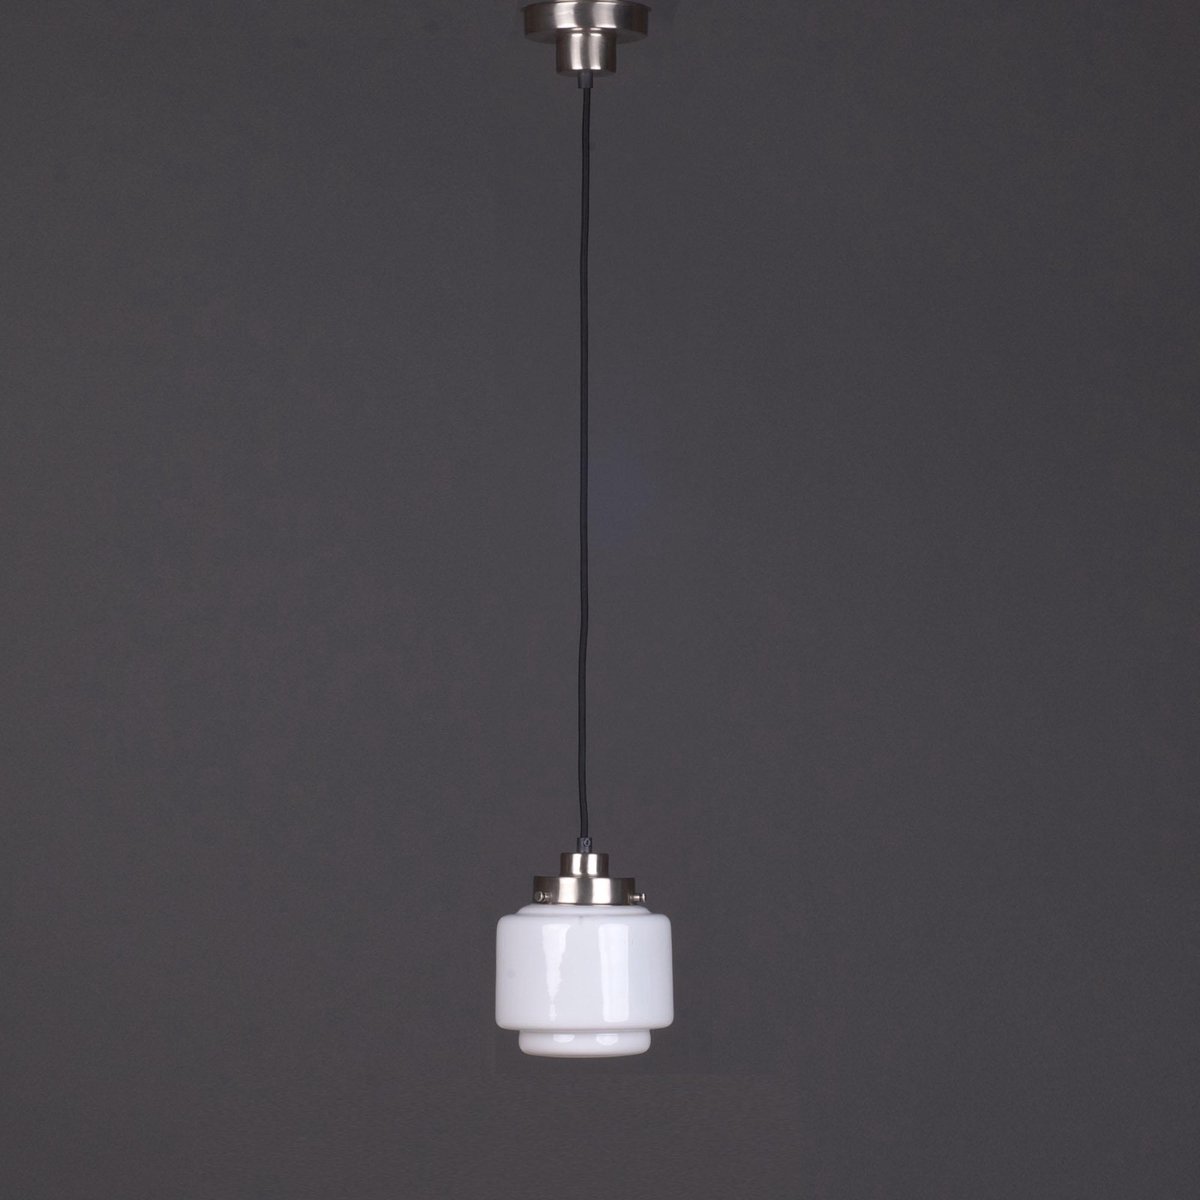 Art Deco Lamp - Hanglamp Smalle Getrapte Cilinder met vintage snoer - Art Deco Trade